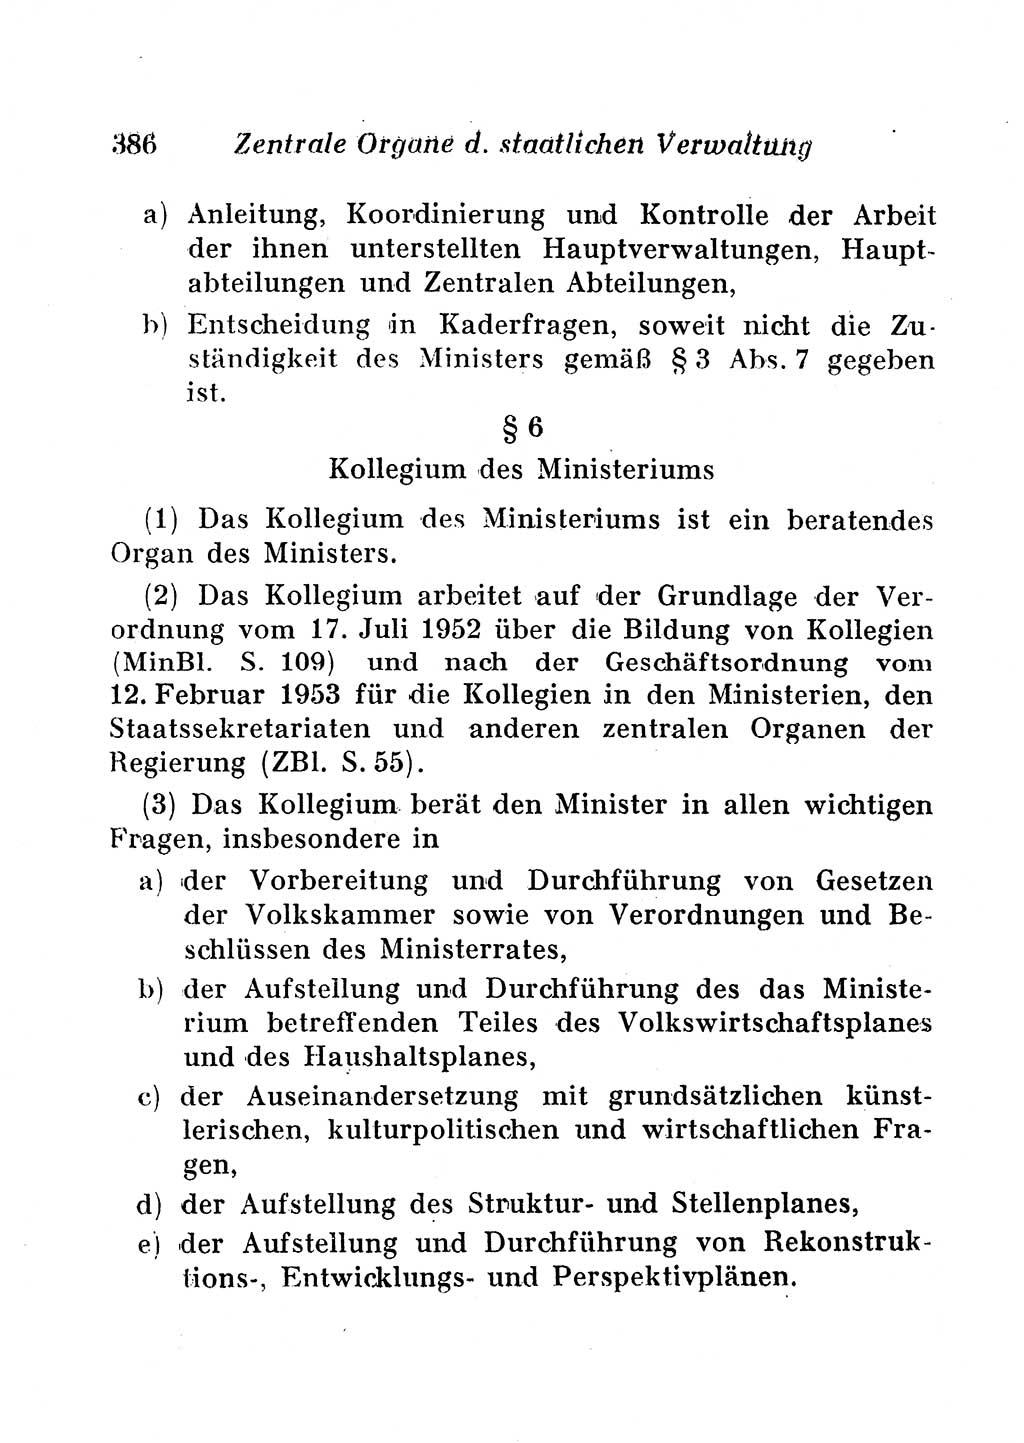 Staats- und verwaltungsrechtliche Gesetze der Deutschen Demokratischen Republik (DDR) 1958, Seite 386 (StVerwR Ges. DDR 1958, S. 386)